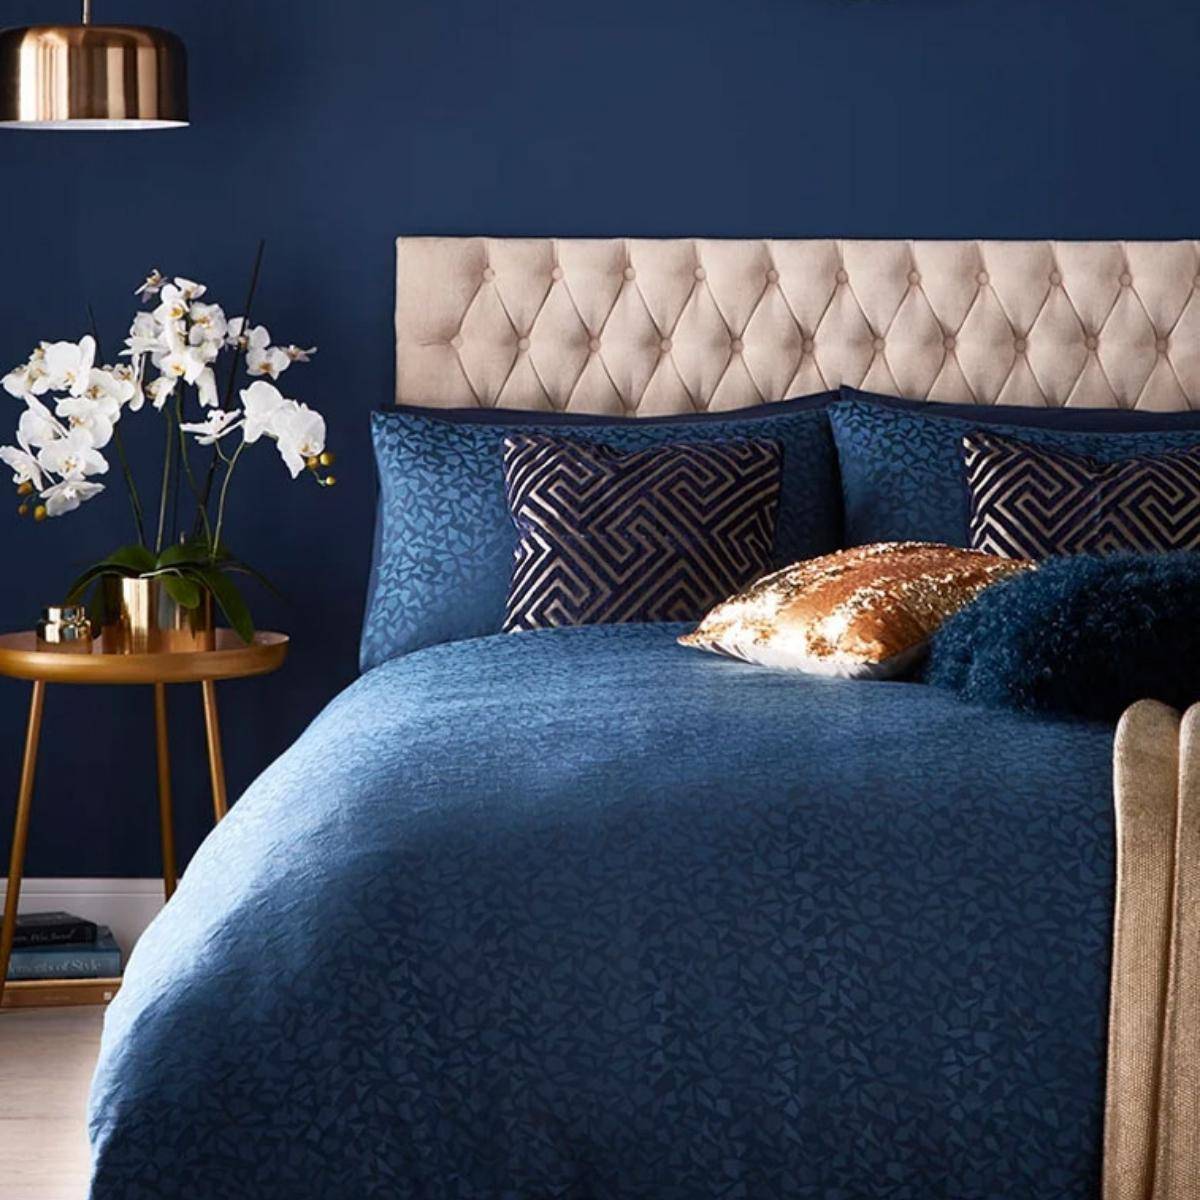 promeed dark blue bedding